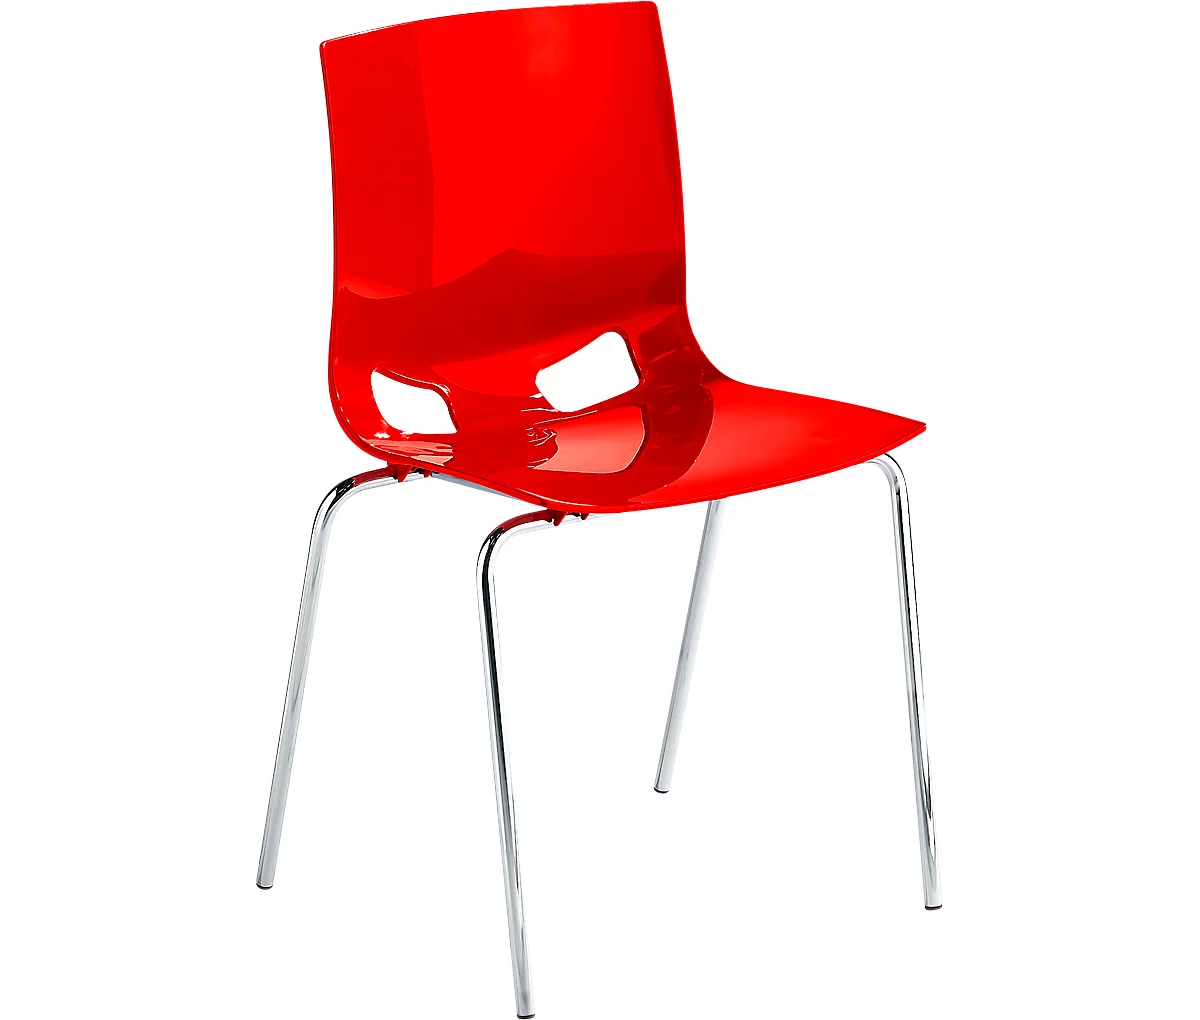 Silla de bistró FONDO, silla de plástico de 4 patas, marco cromado, apilable hasta 6 sillas, rojo